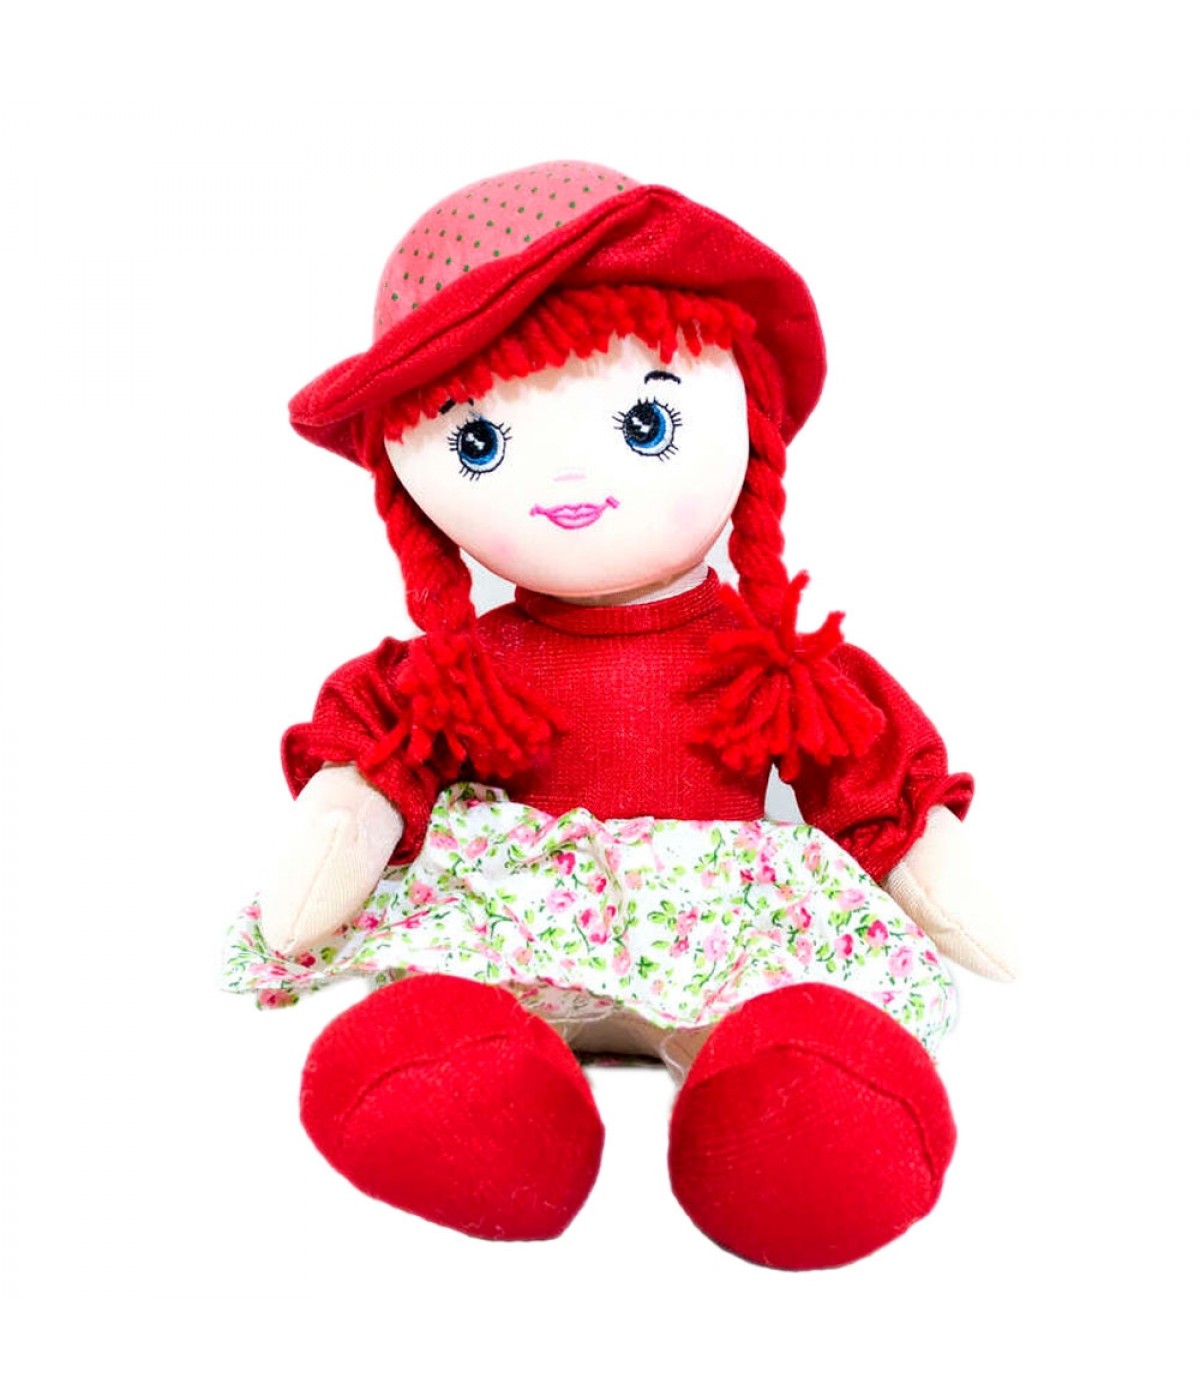 Roupa para Boneca - Vestido Poá Vermelho - Cantinho da Boneca